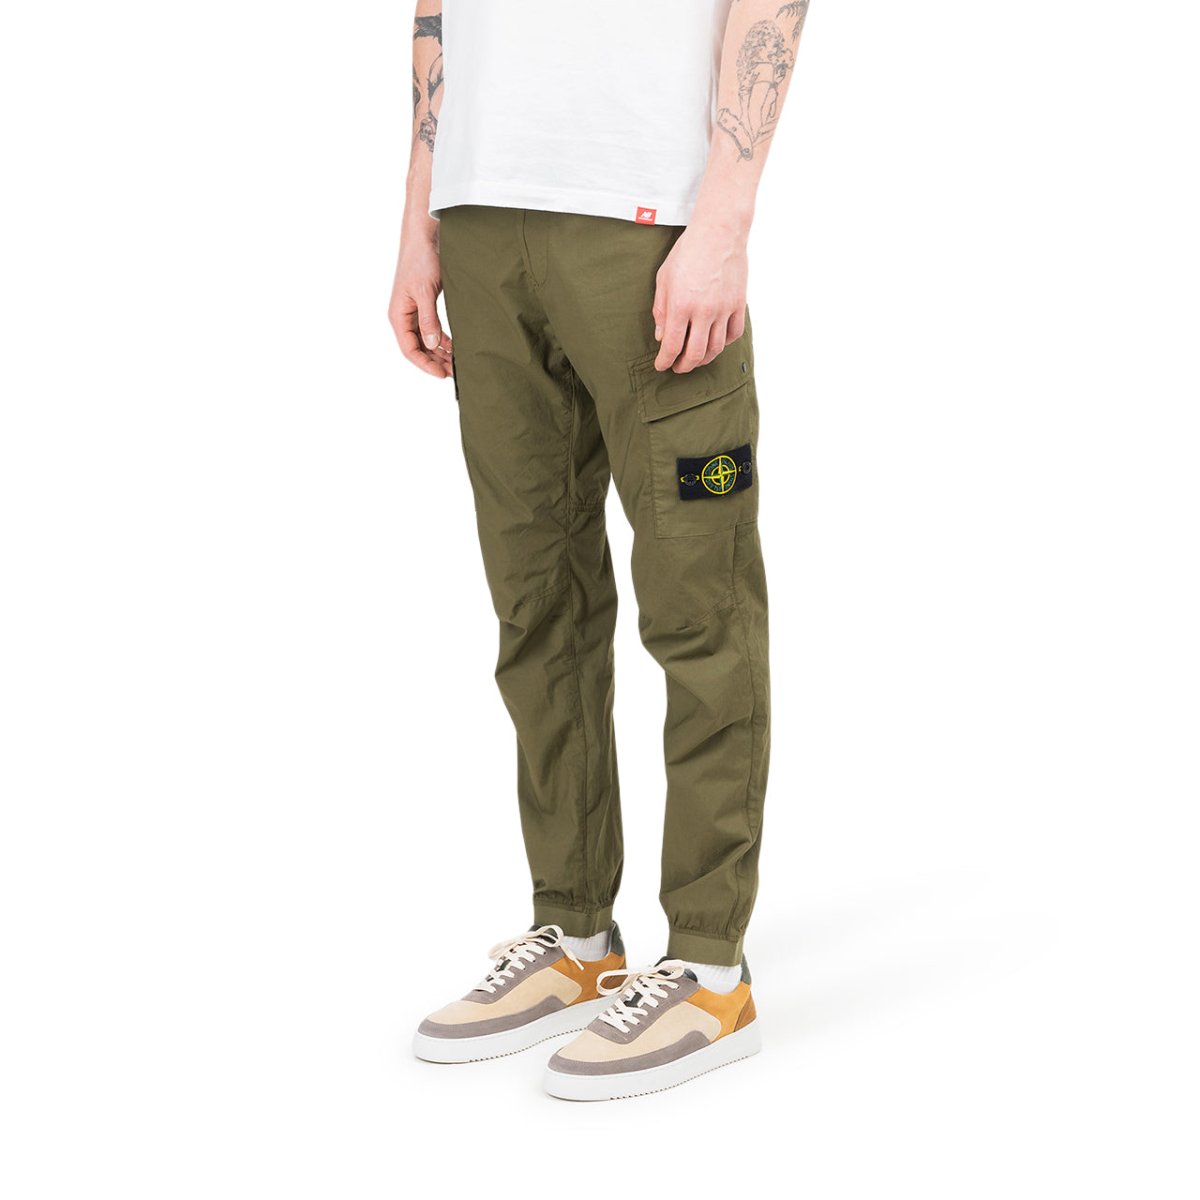 Stone Island Cargo Pants (Olive)  - Allike Store